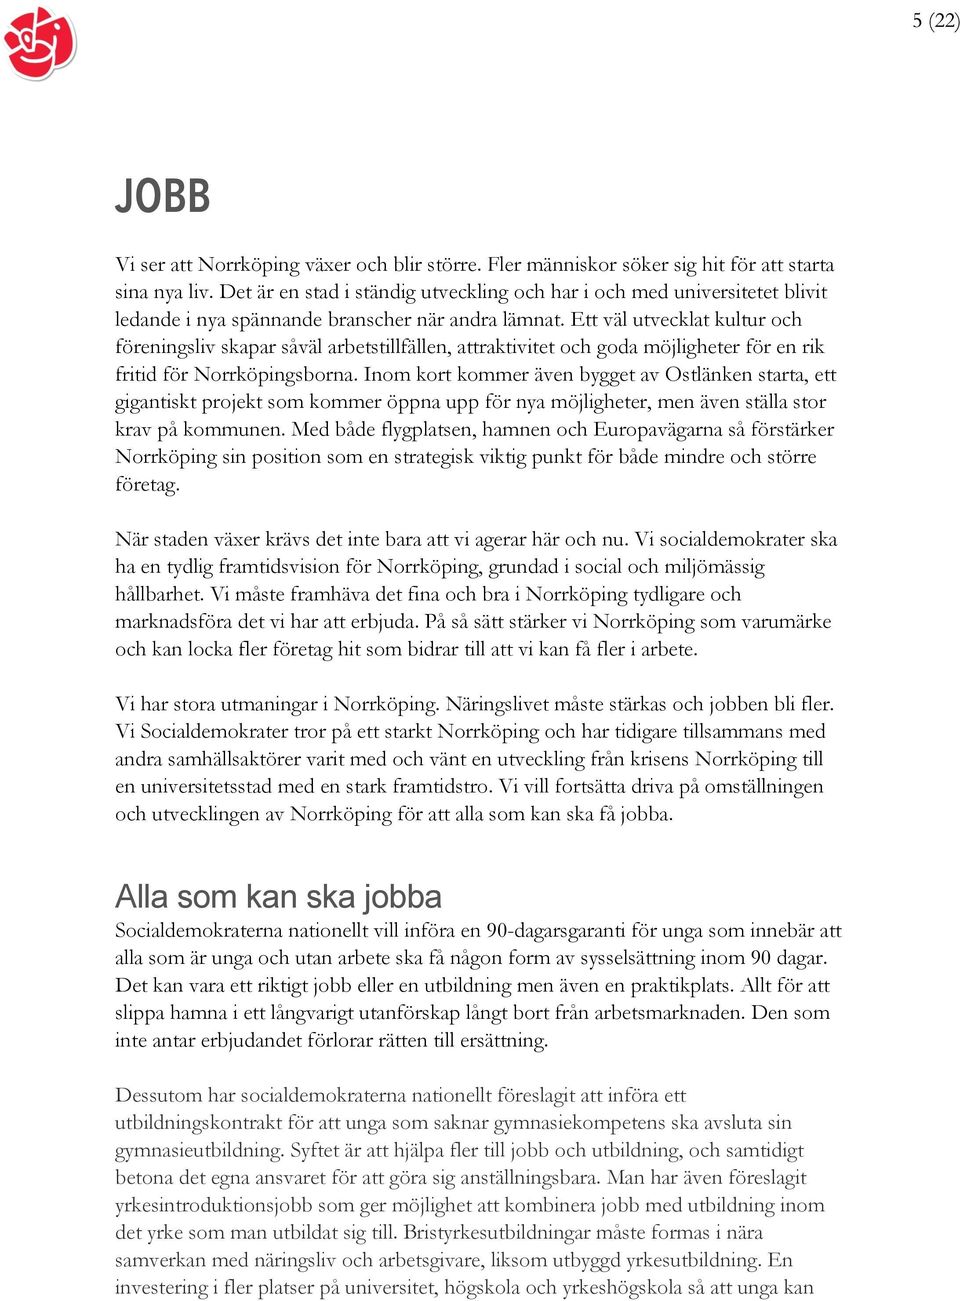 Ett väl utvecklat kultur och föreningsliv skapar såväl arbetstillfällen, attraktivitet och goda möjligheter för en rik fritid för Norrköpingsborna.